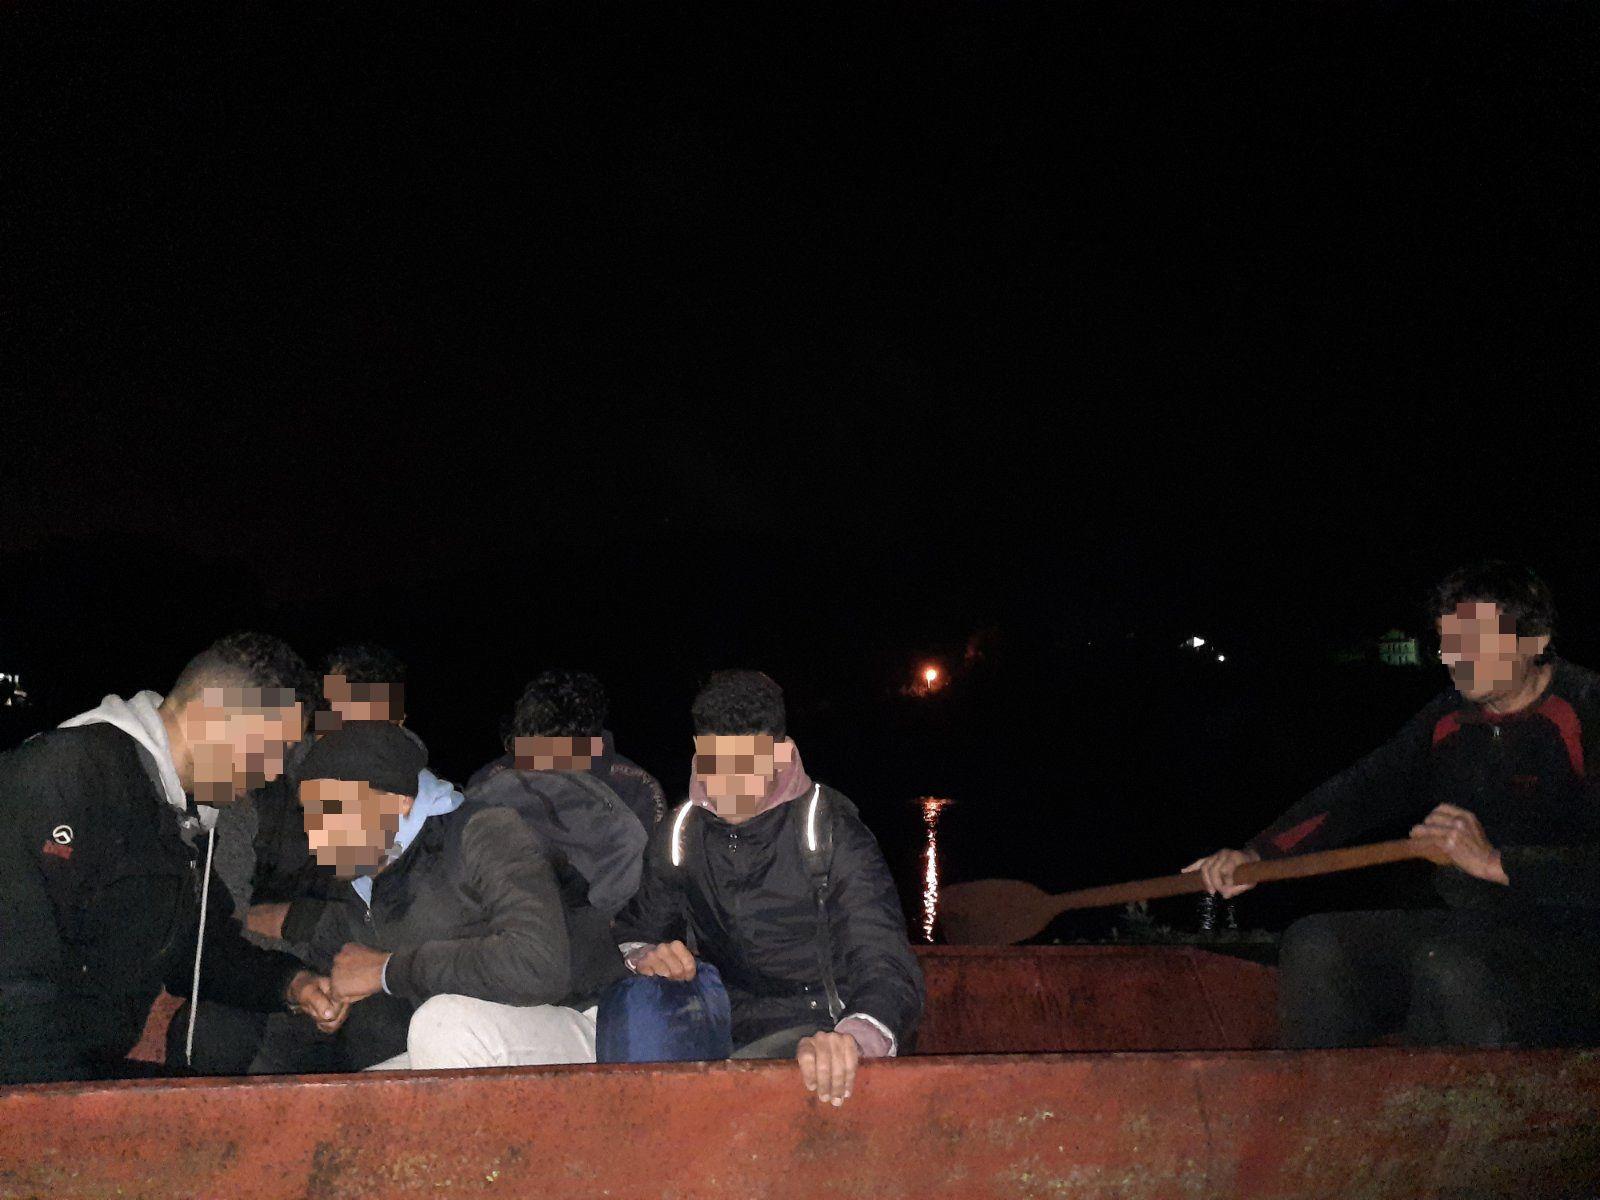 Srbijanac migrante prevozio čamcem, bh. državljanin Golfom